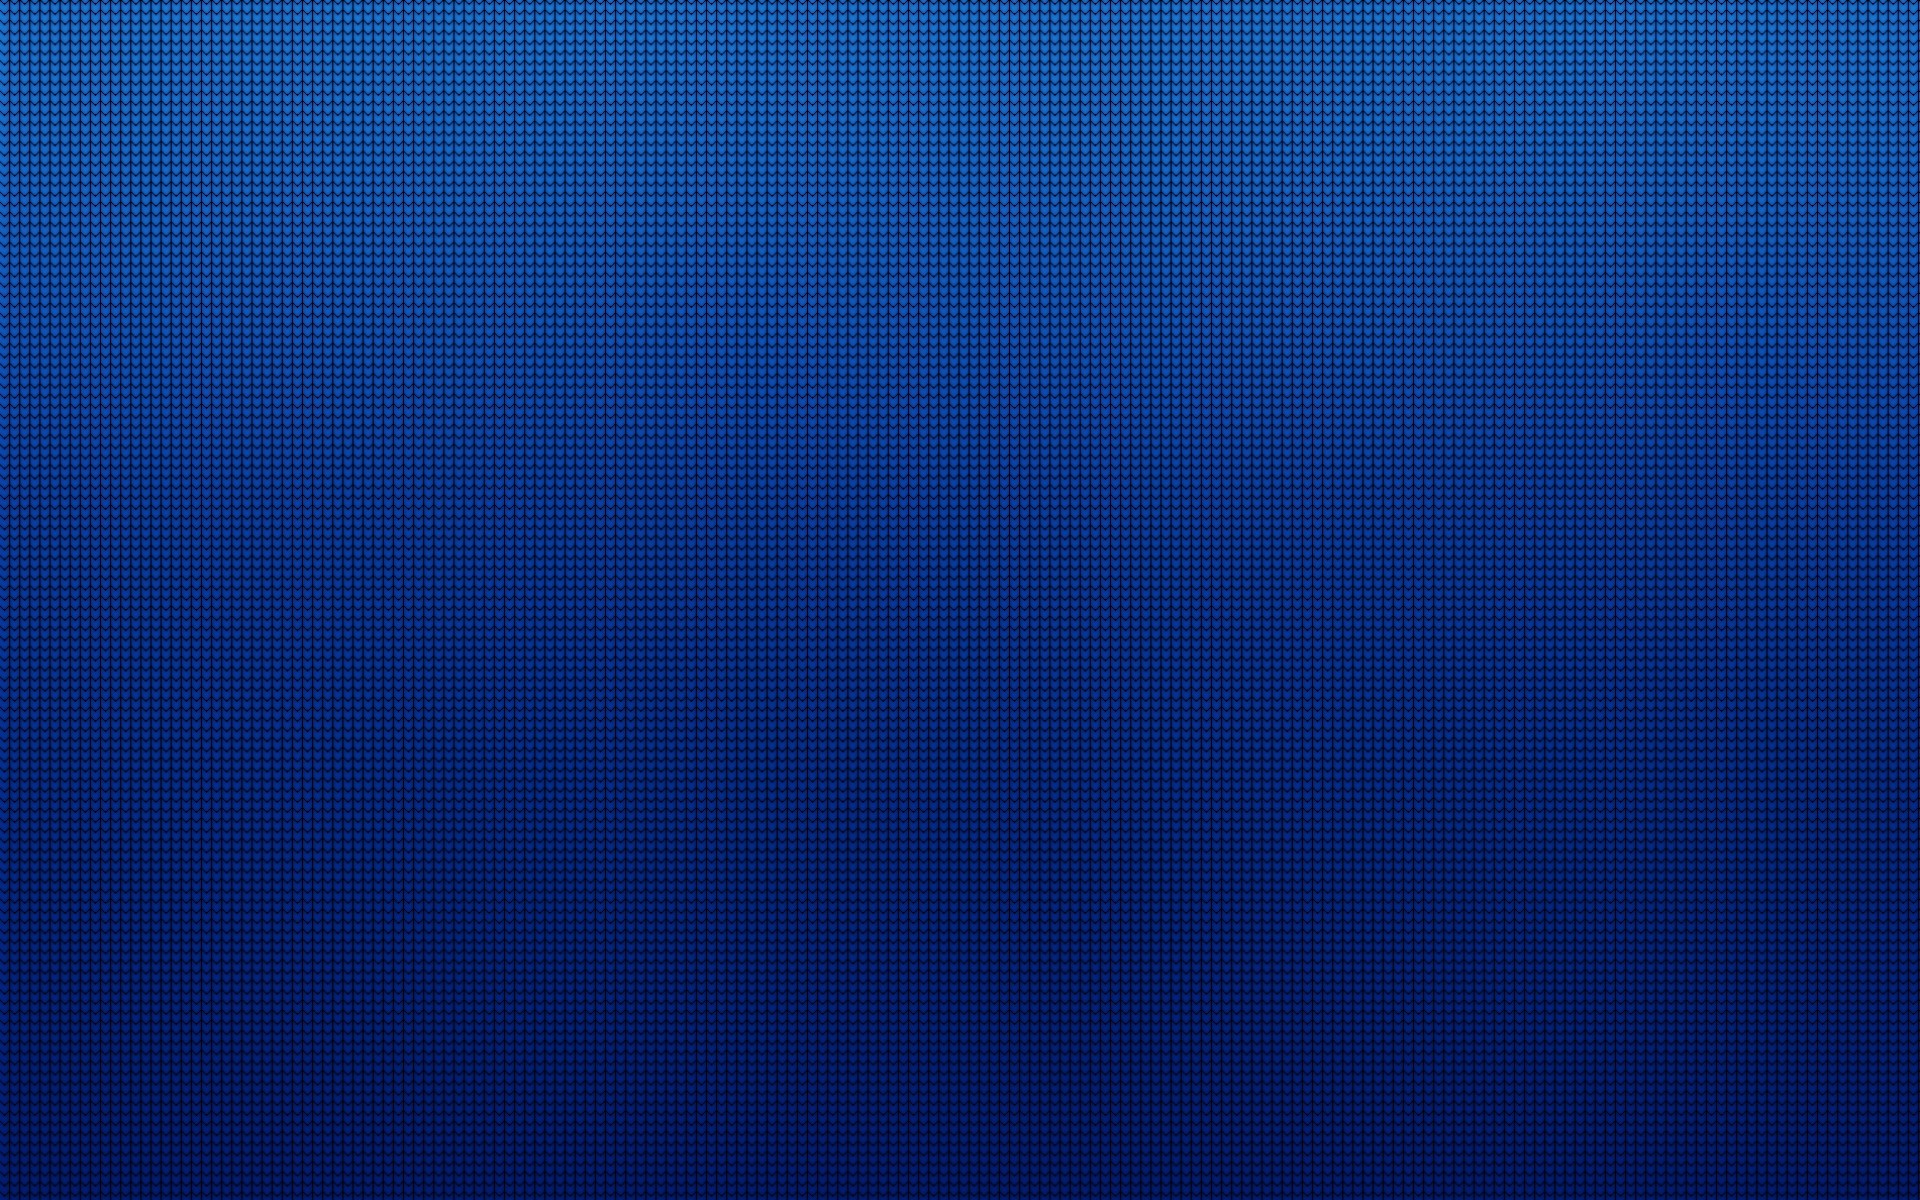 Plain Blue Background Image For Websites